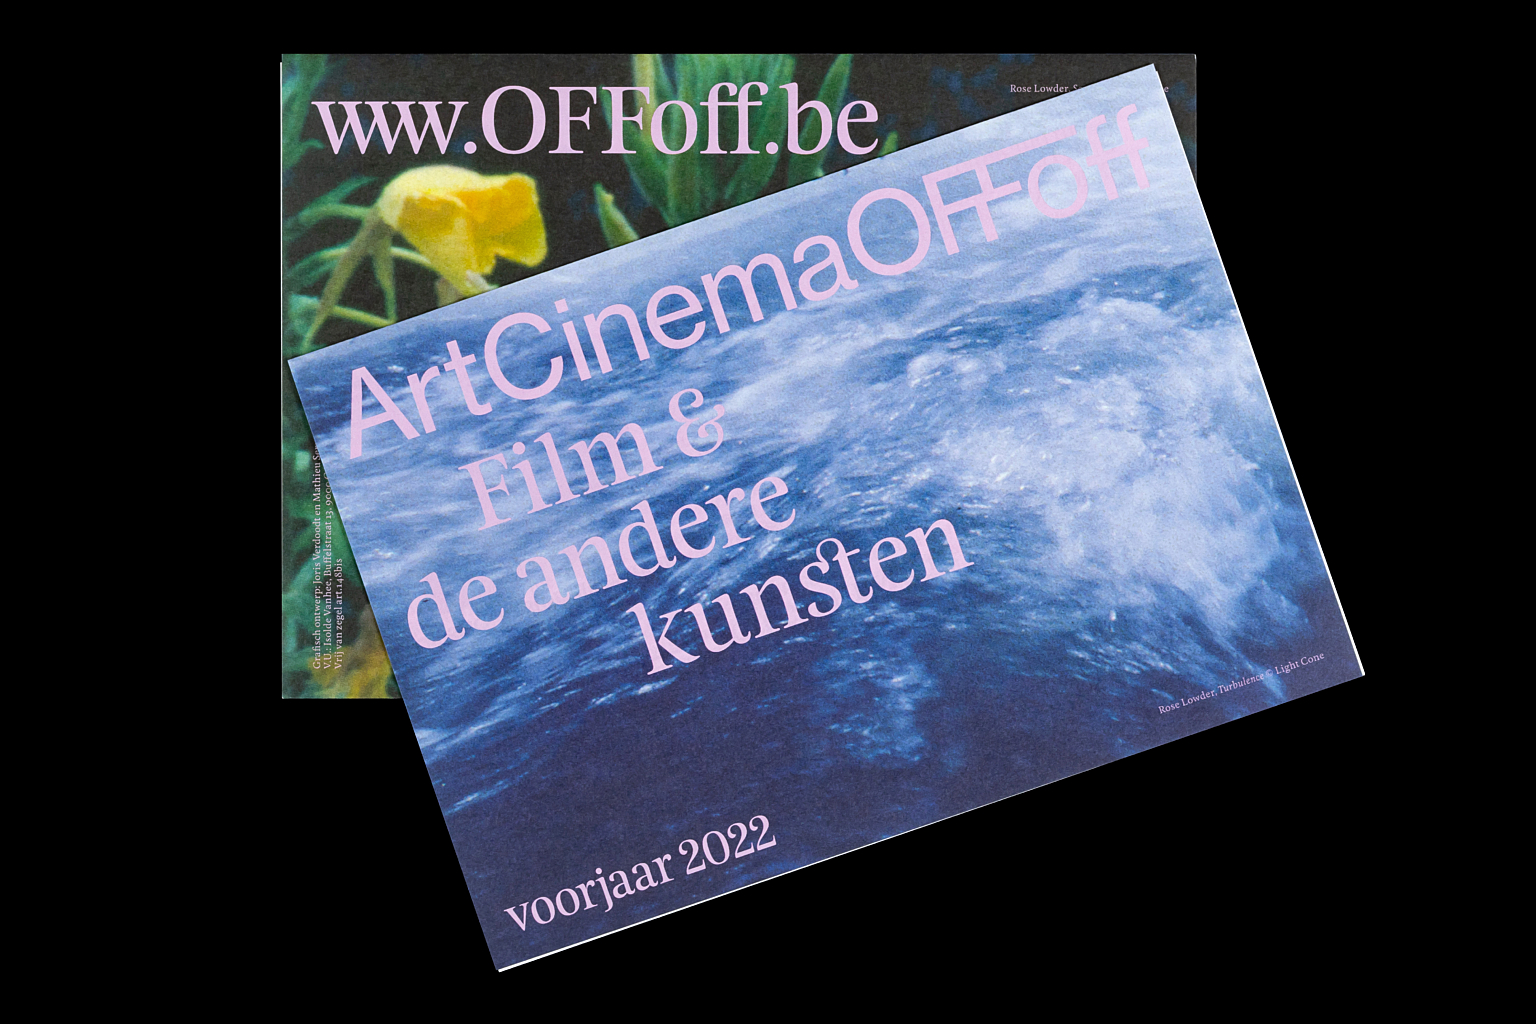 OF Foff Film Andere kunsten 2